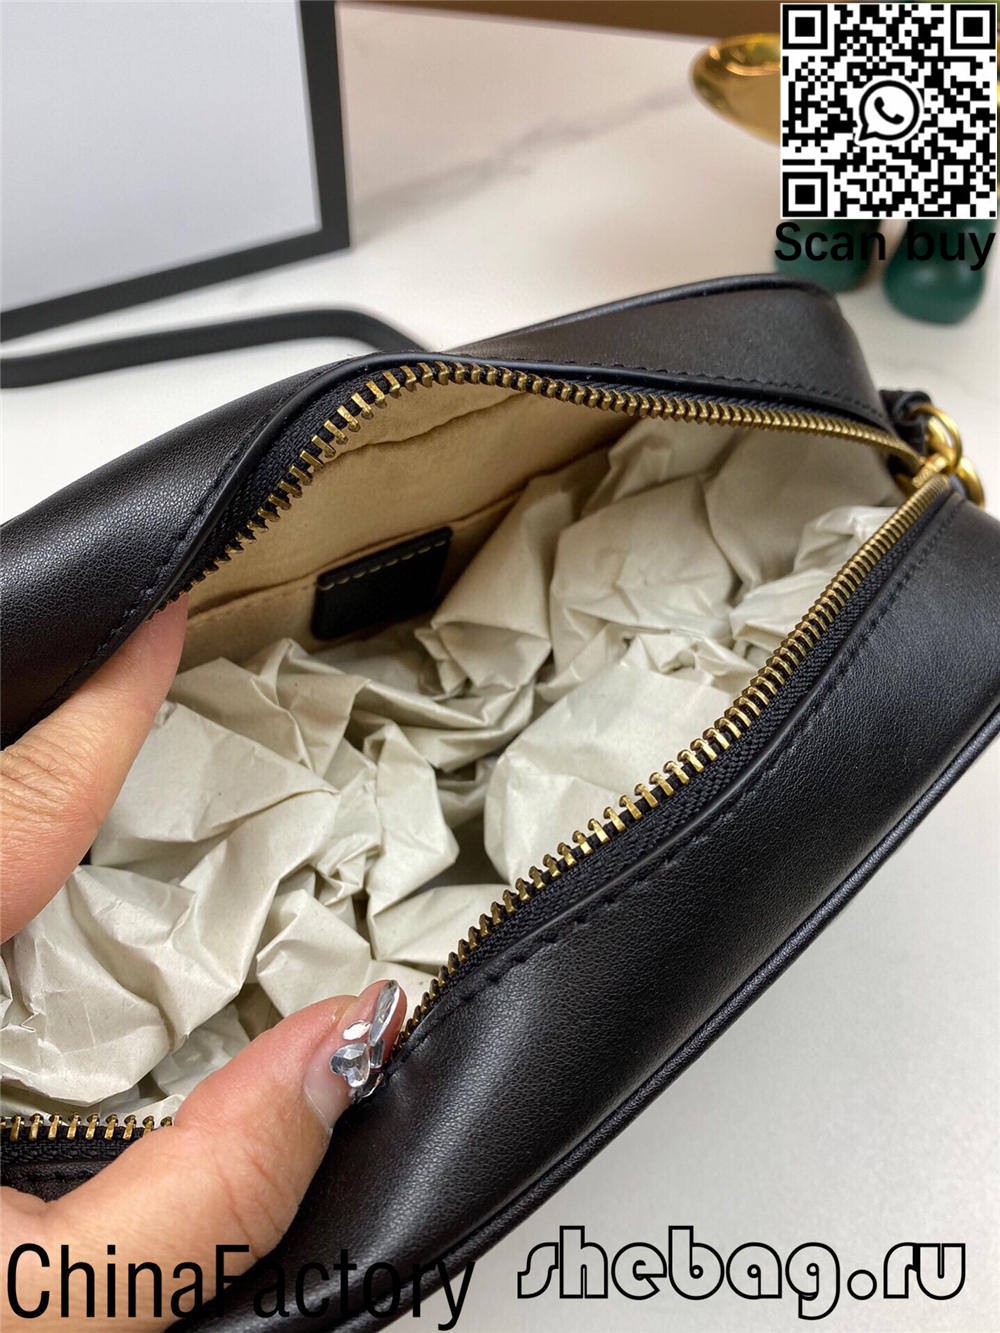 Де я можу знайти постачальника реплік сумок GG у Великобританії? (Оновлено 2022 р.) - Інтернет-магазин підробленої сумки Louis Vuitton найкращої якості, копія дизайнерської сумки ru